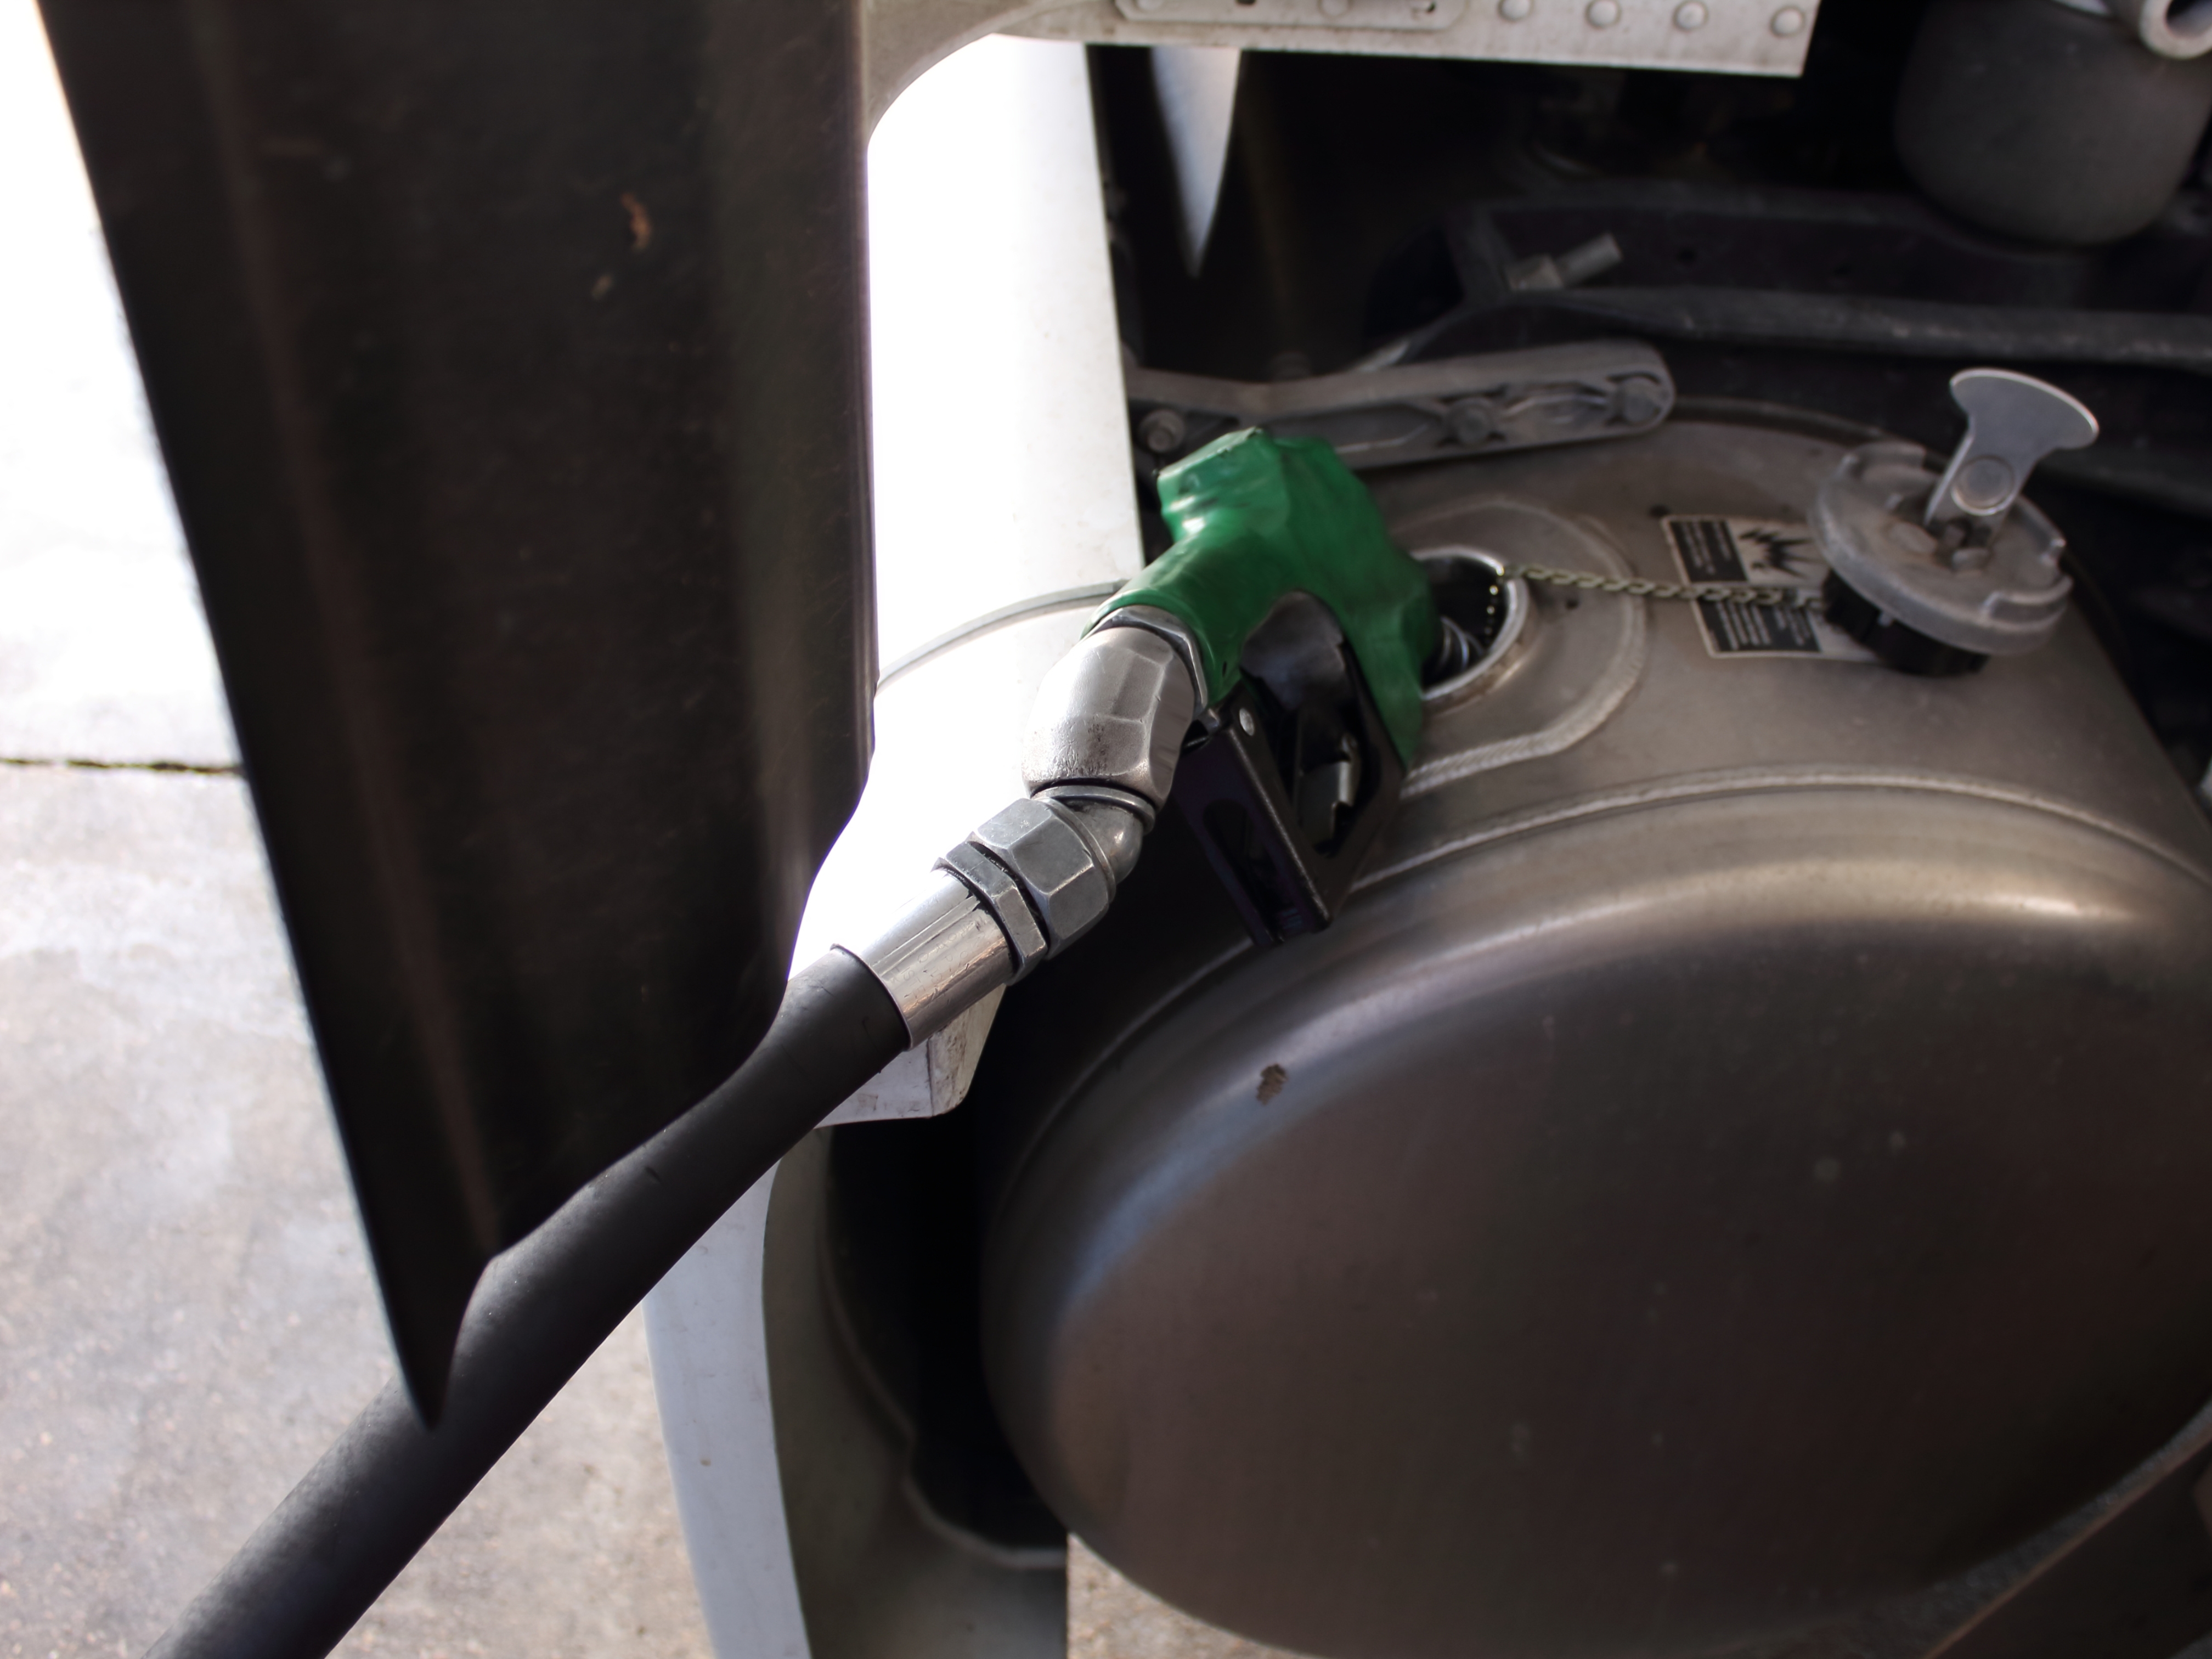 SETCERGS reprova decisão da Câmara dos Deputados sobre aumento da mistura obrigatória de biodiesel ao diesel